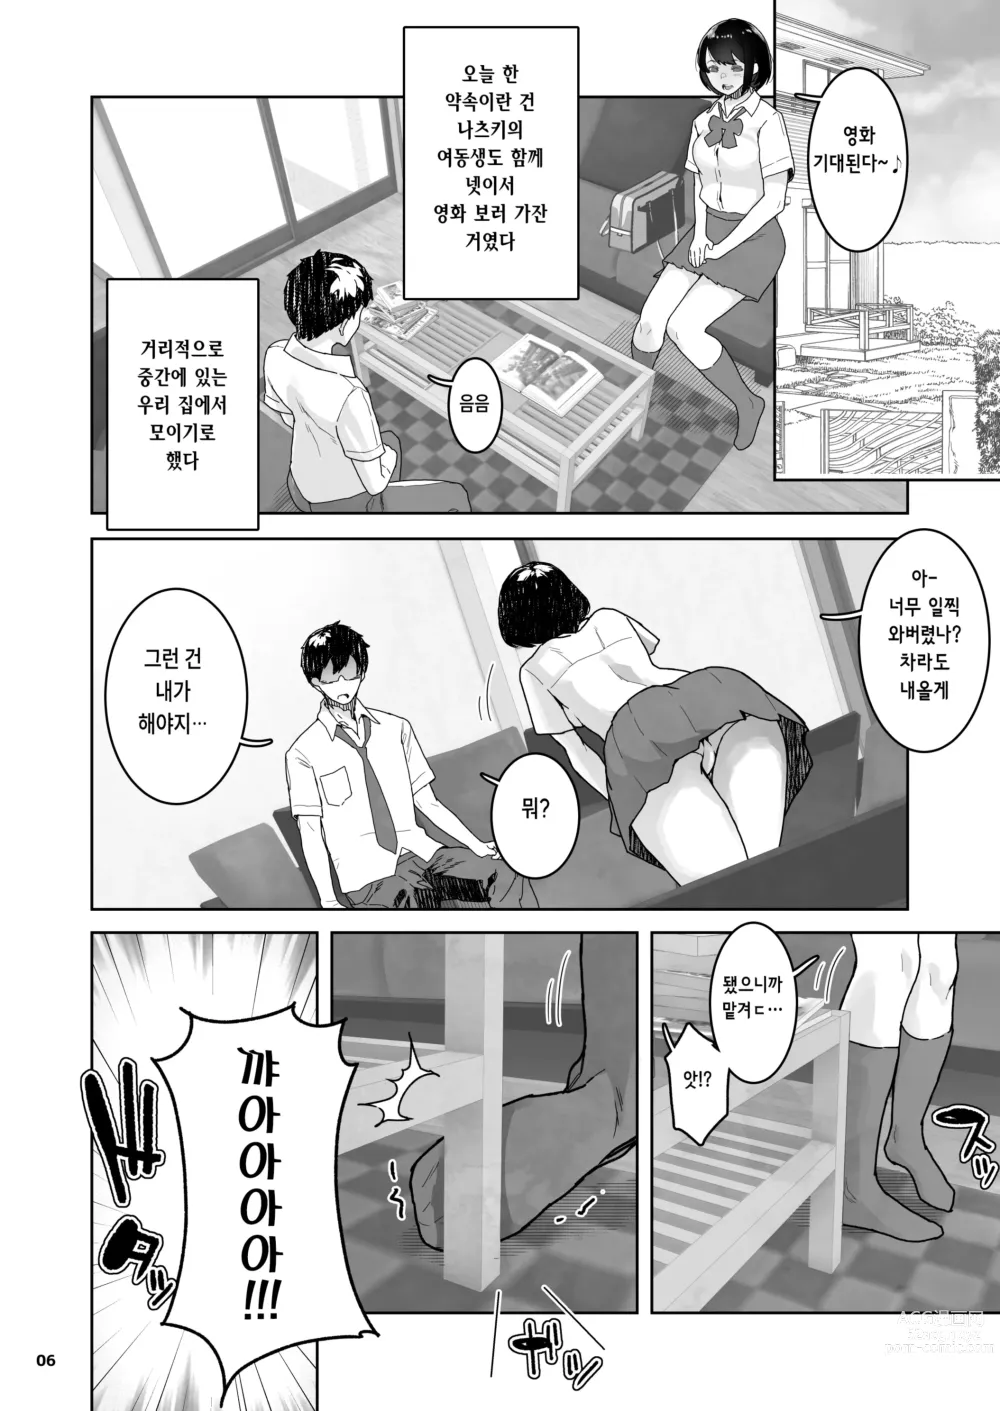 Page 6 of doujinshi 친구의 마지막